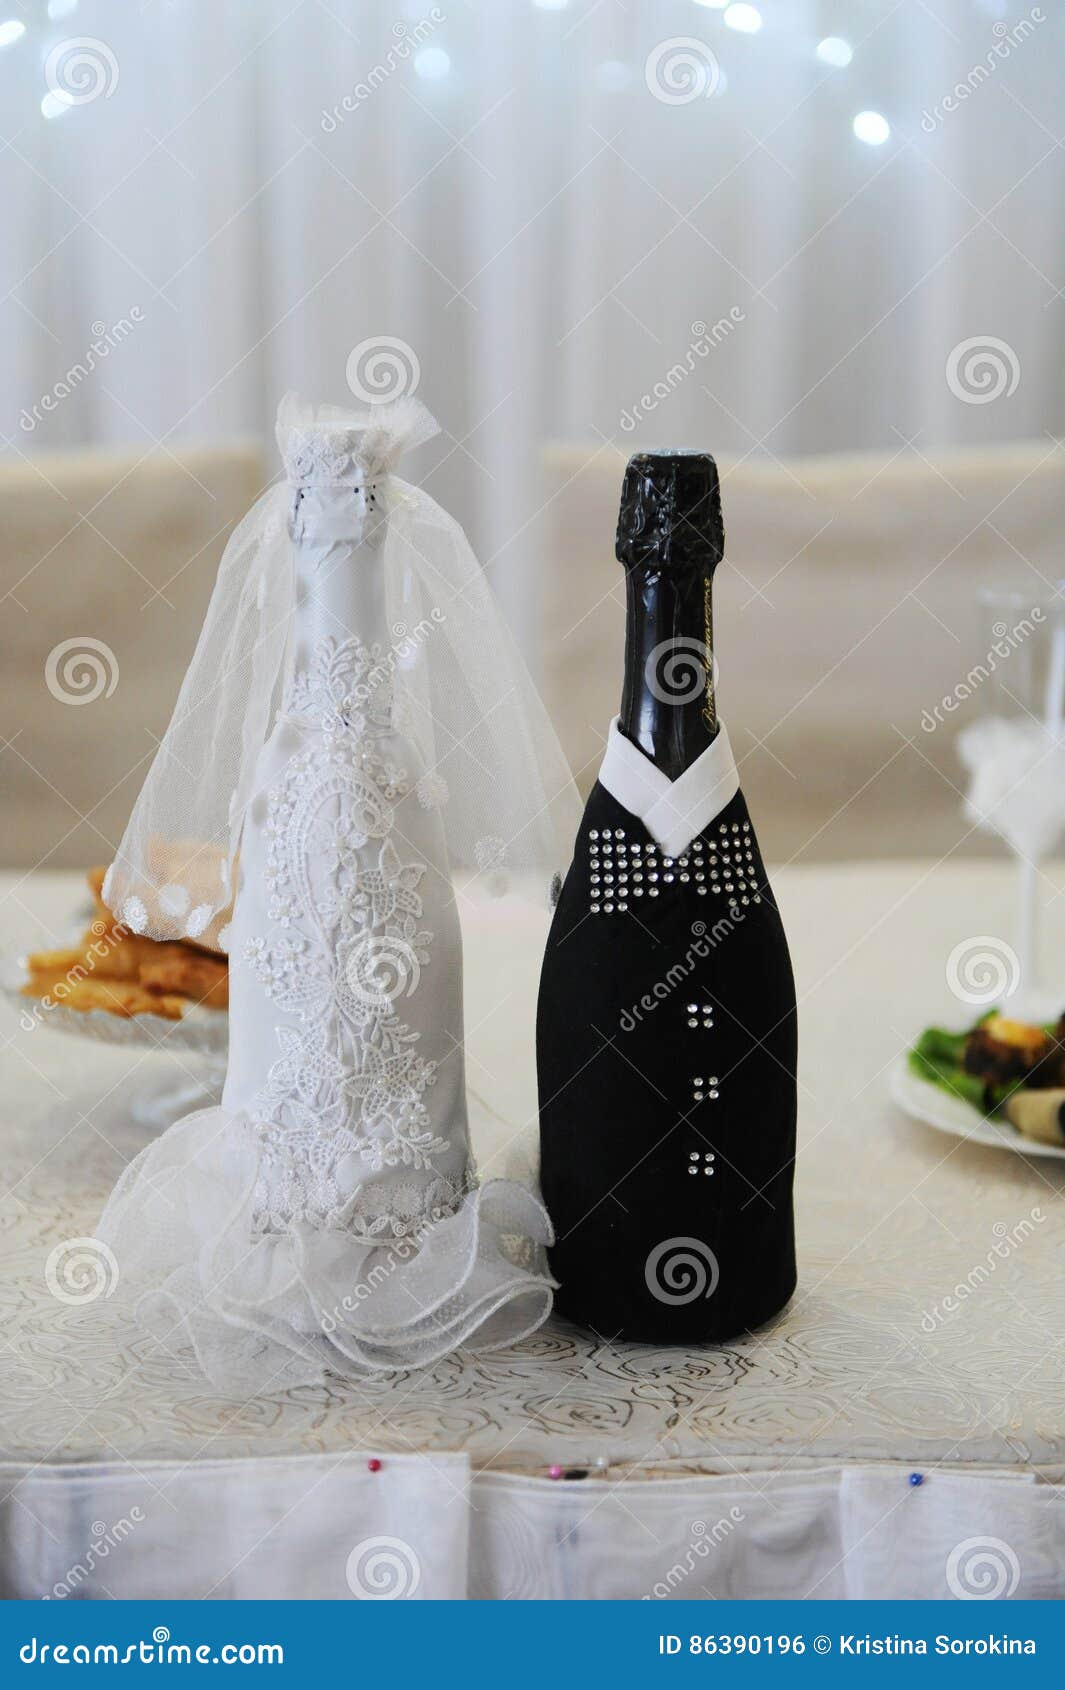 DreamJ copas de champán con caja de regalo para novios y novios Juego de 2 copas de champán creativas para boda